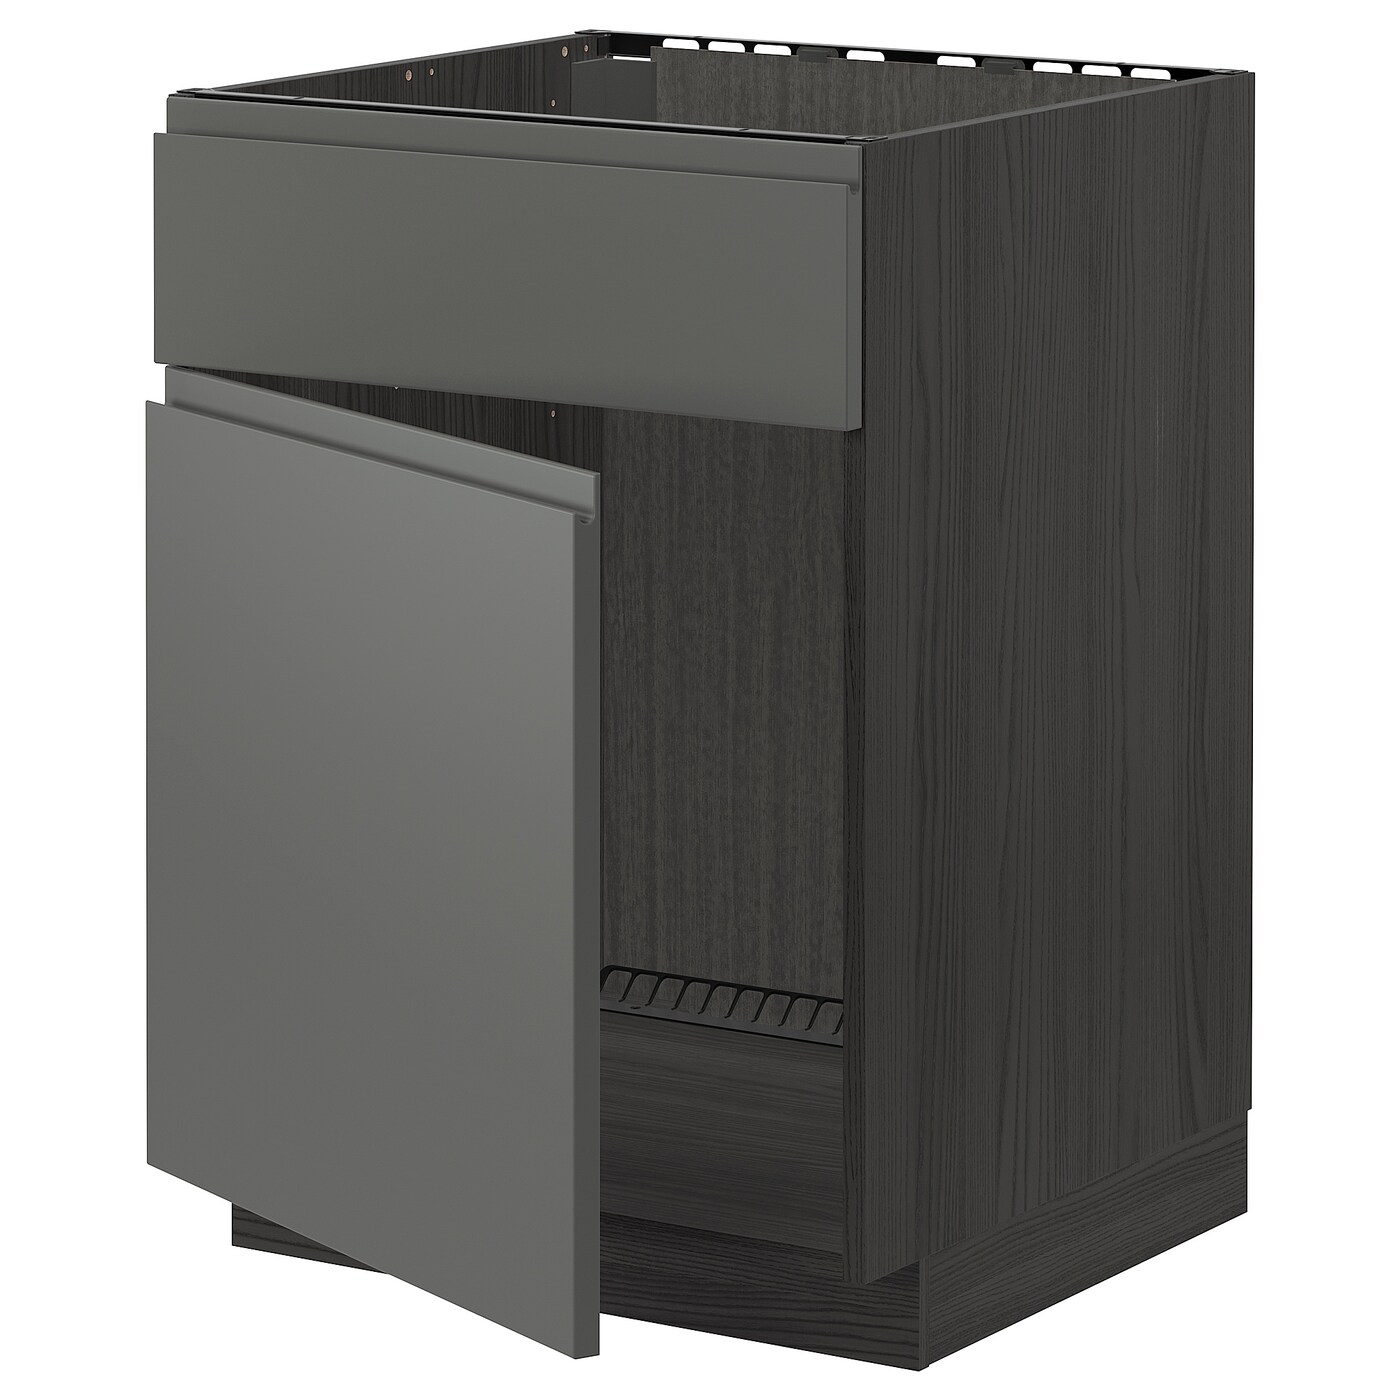 Напольный кухонный шкаф  - IKEA METOD, 88x62x60см, темно-серый/серый, МЕТОД ИКЕА